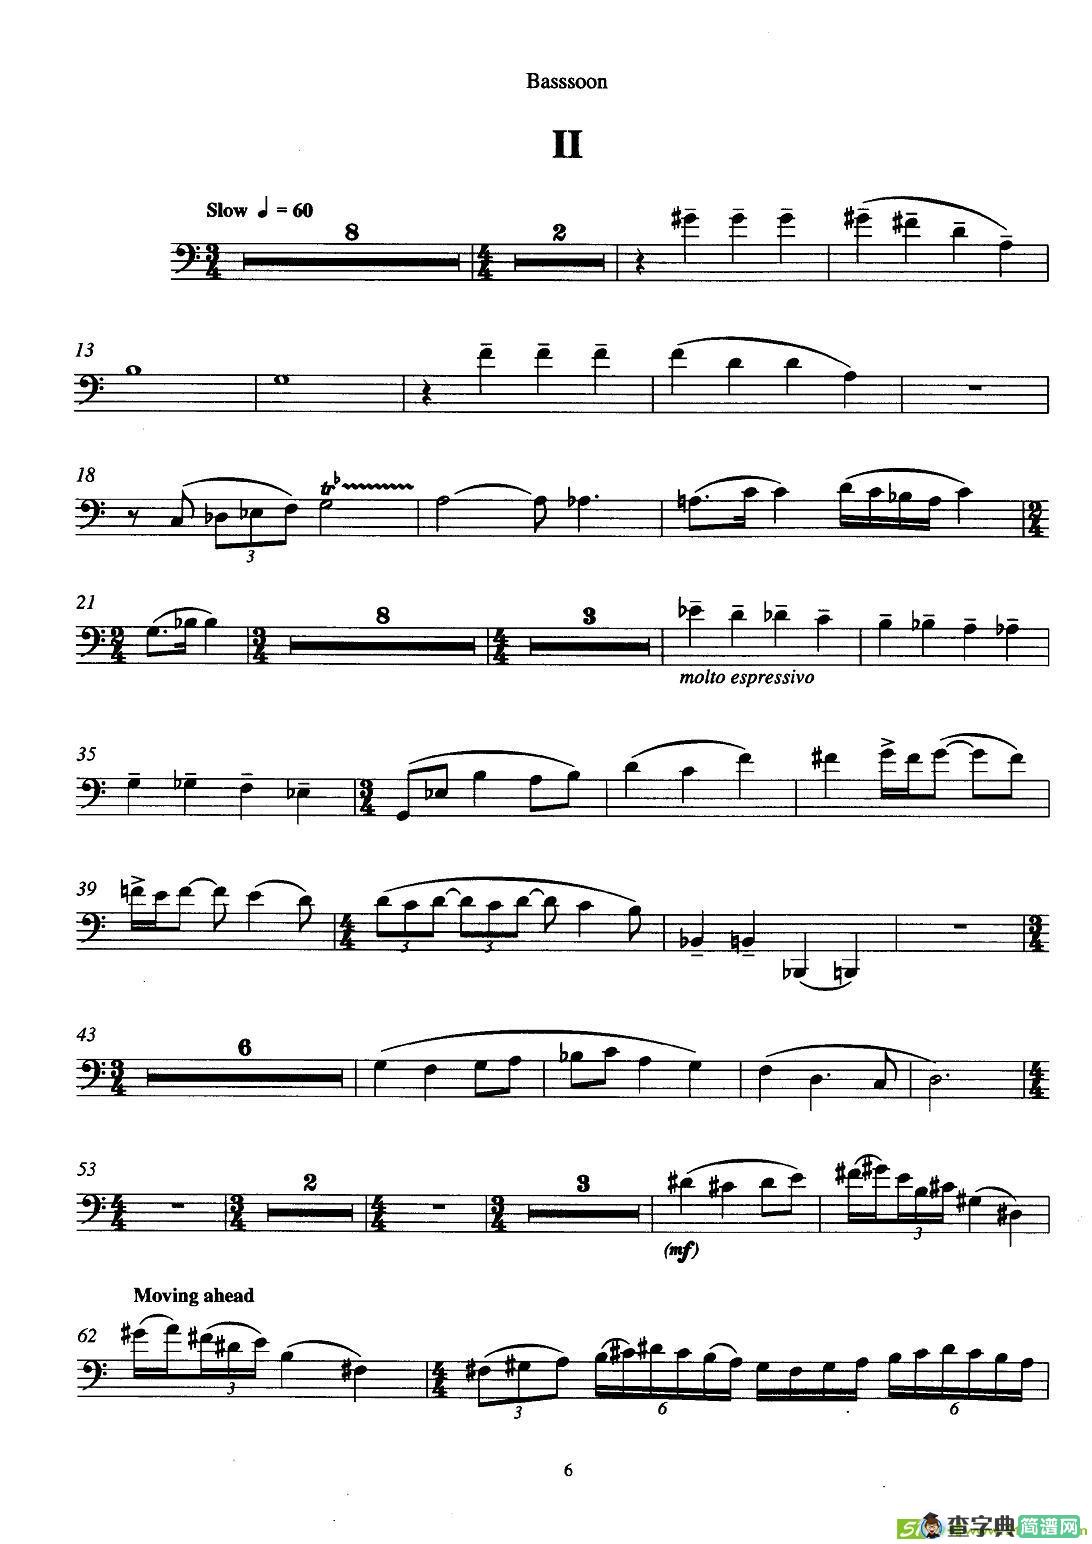 巴松双簧管与钢琴三重奏铜管谱(安德列·普列文作曲)